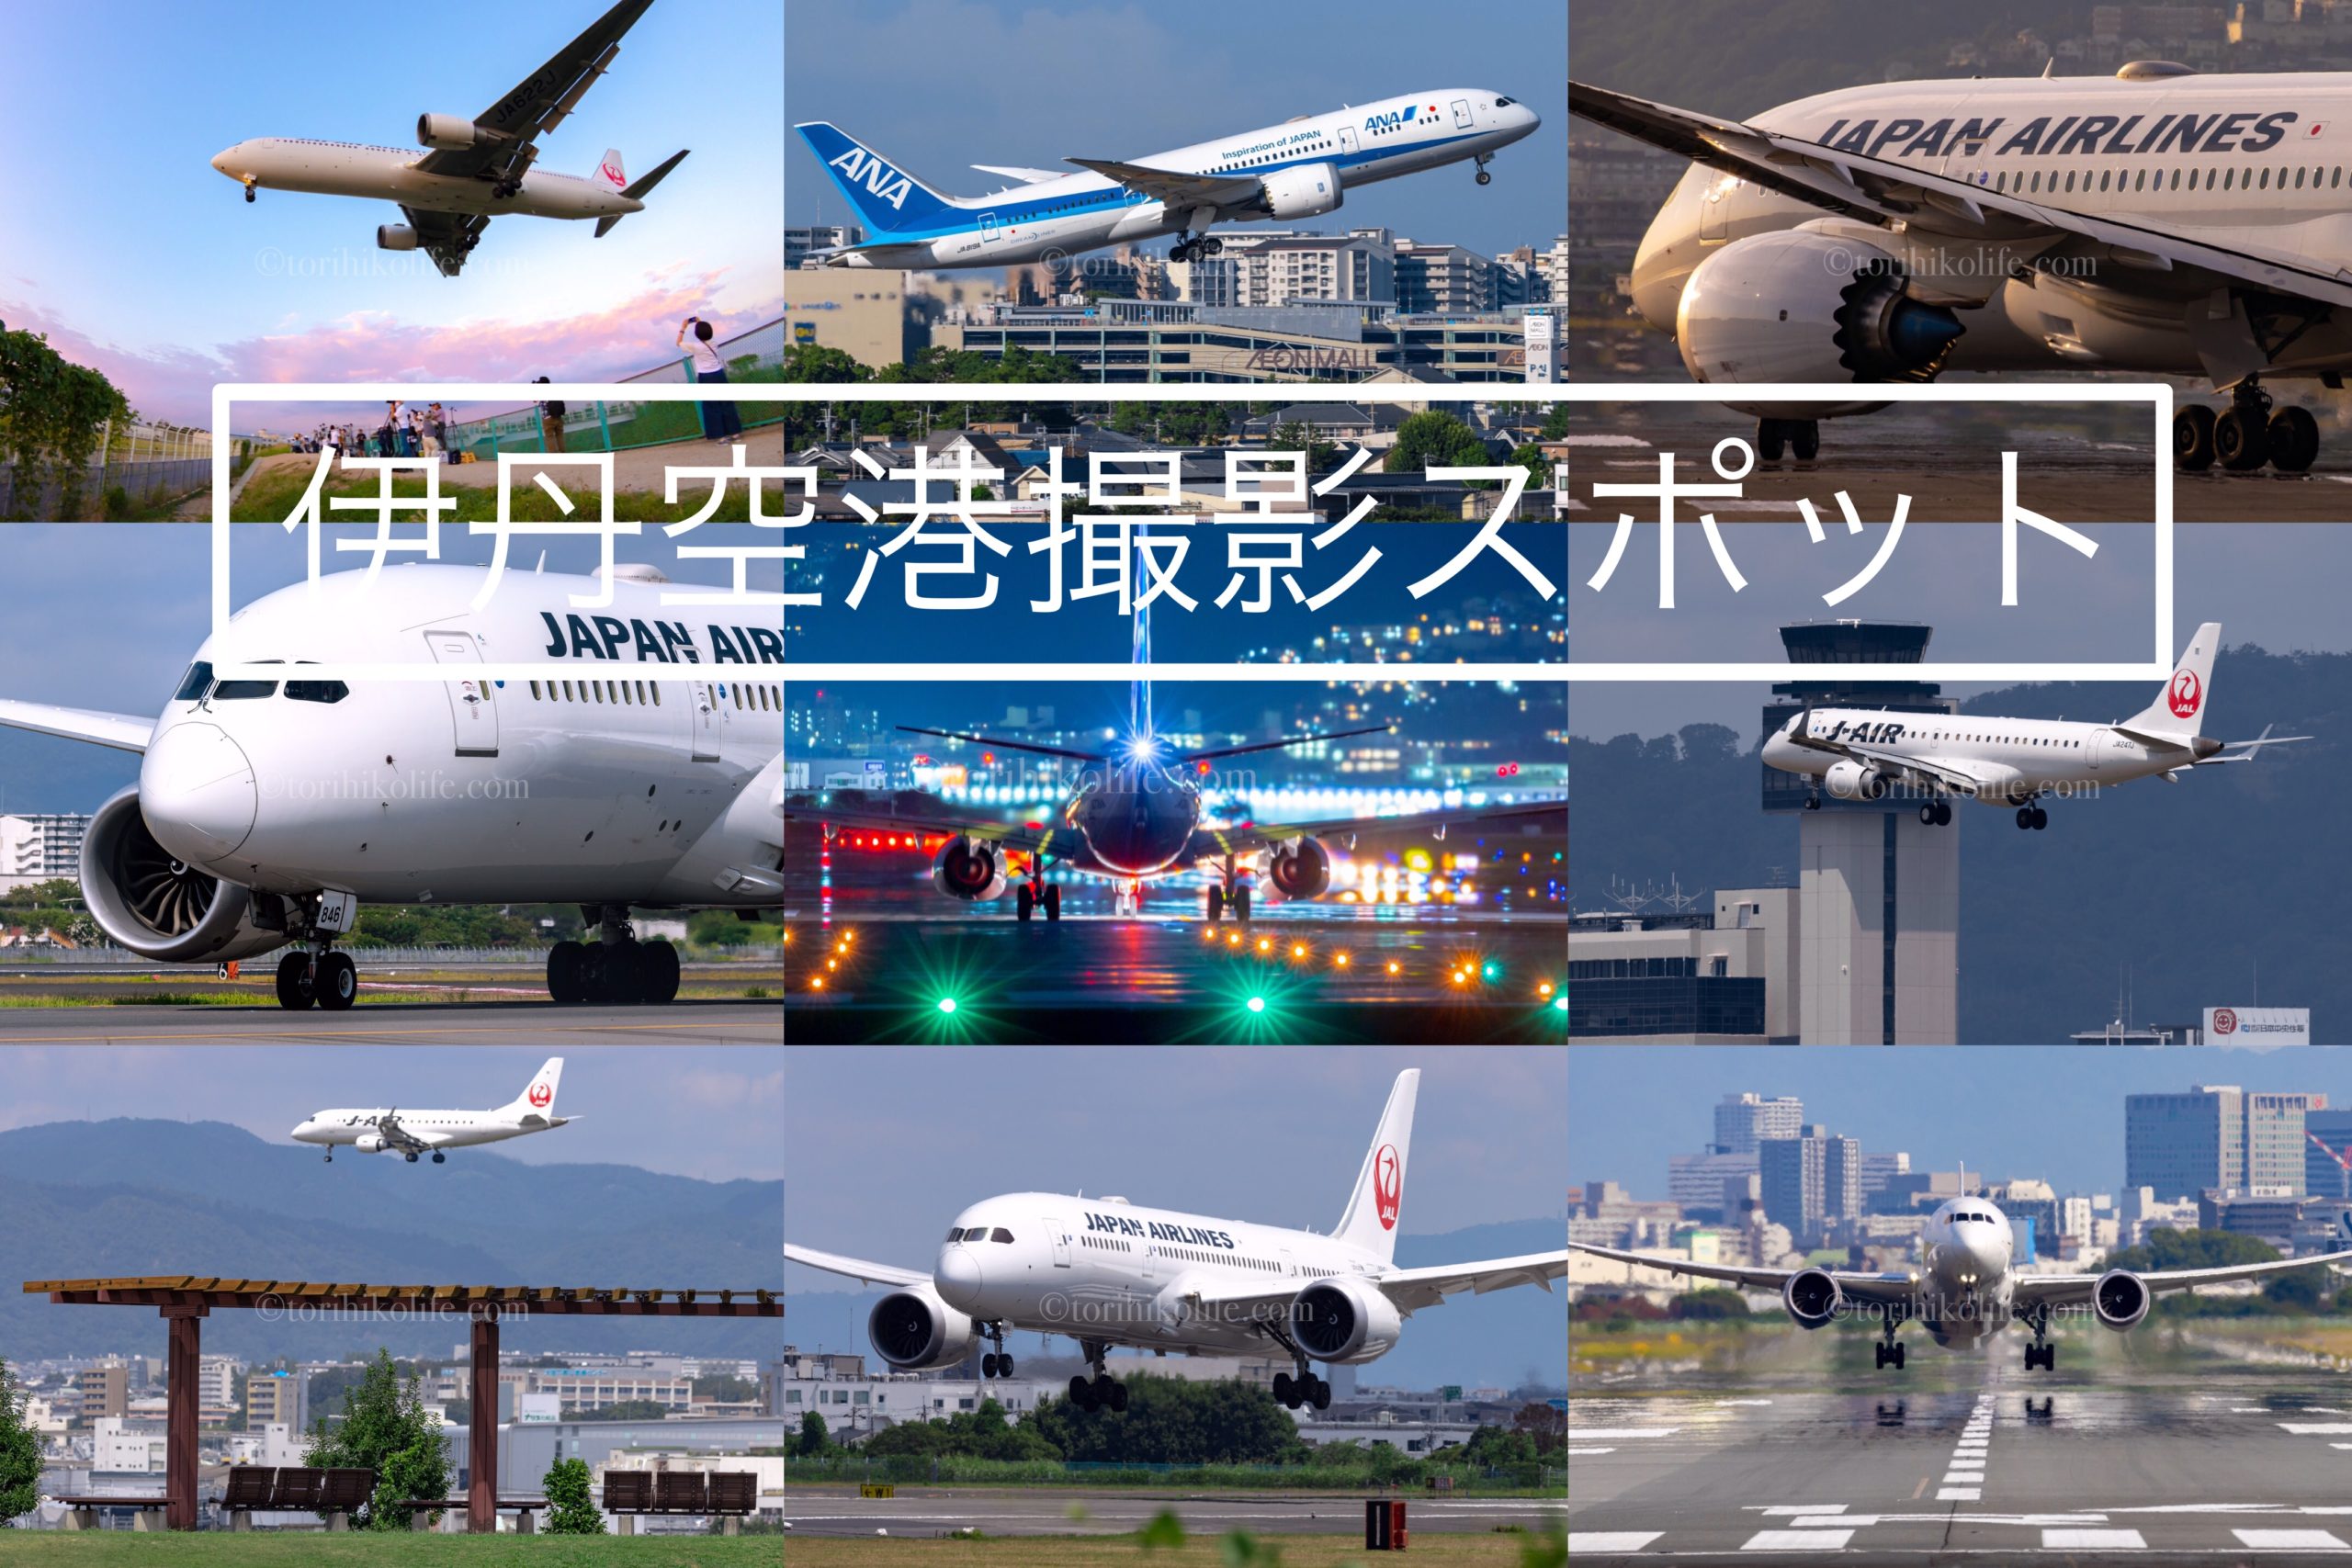 伊丹空港 大阪国際空港 飛行機撮影スポット とりひこライフ